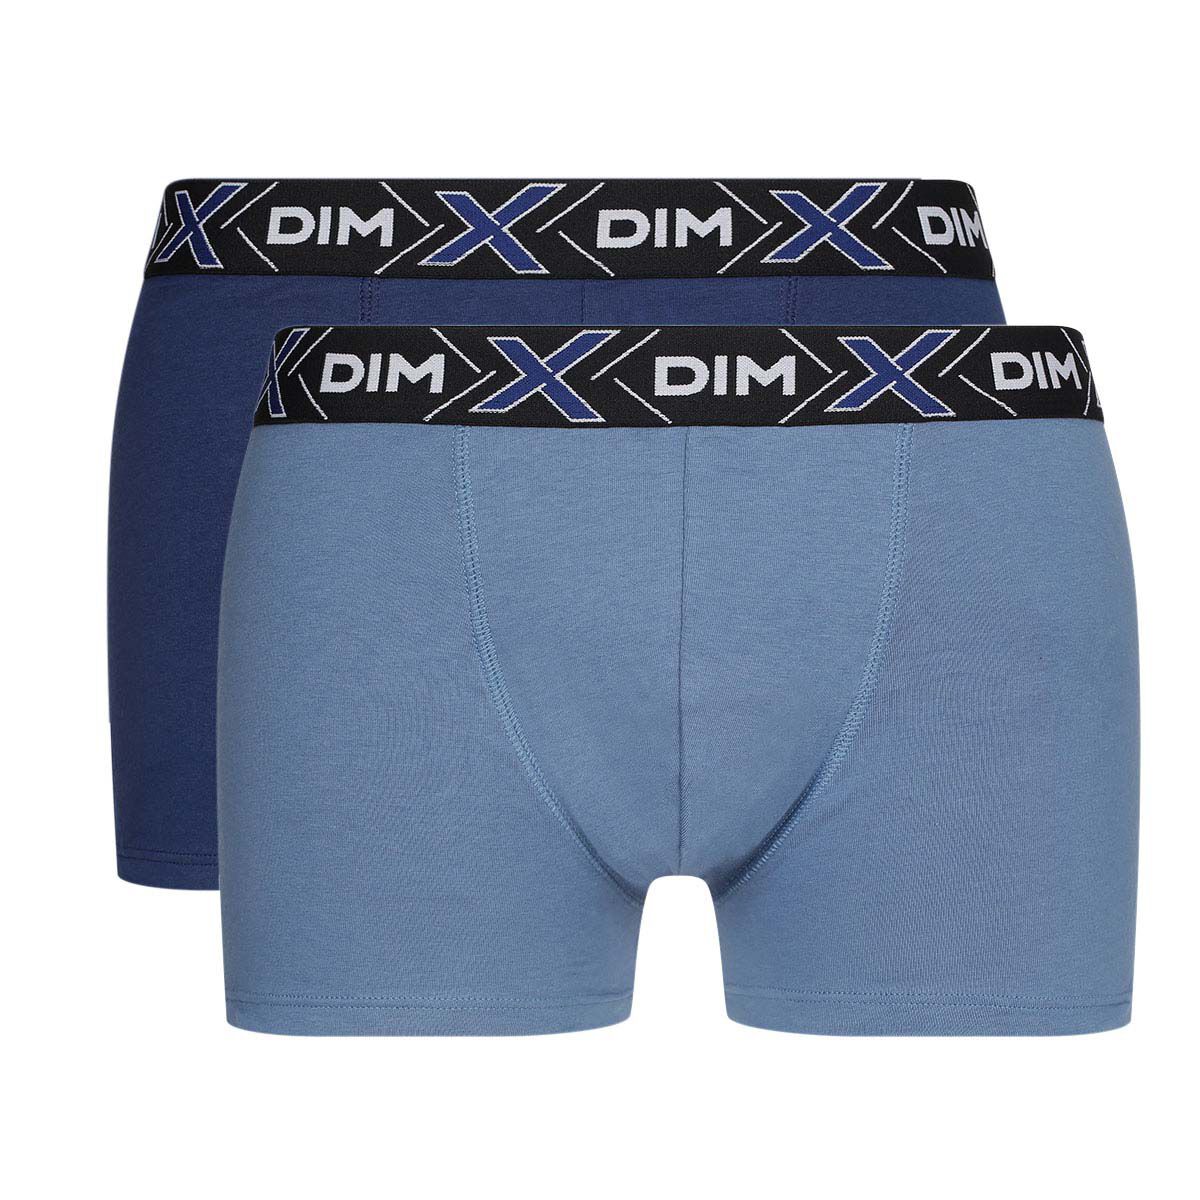 Dim Sous-vêtements Homme Mens Boxer Shorts Pack of 2 